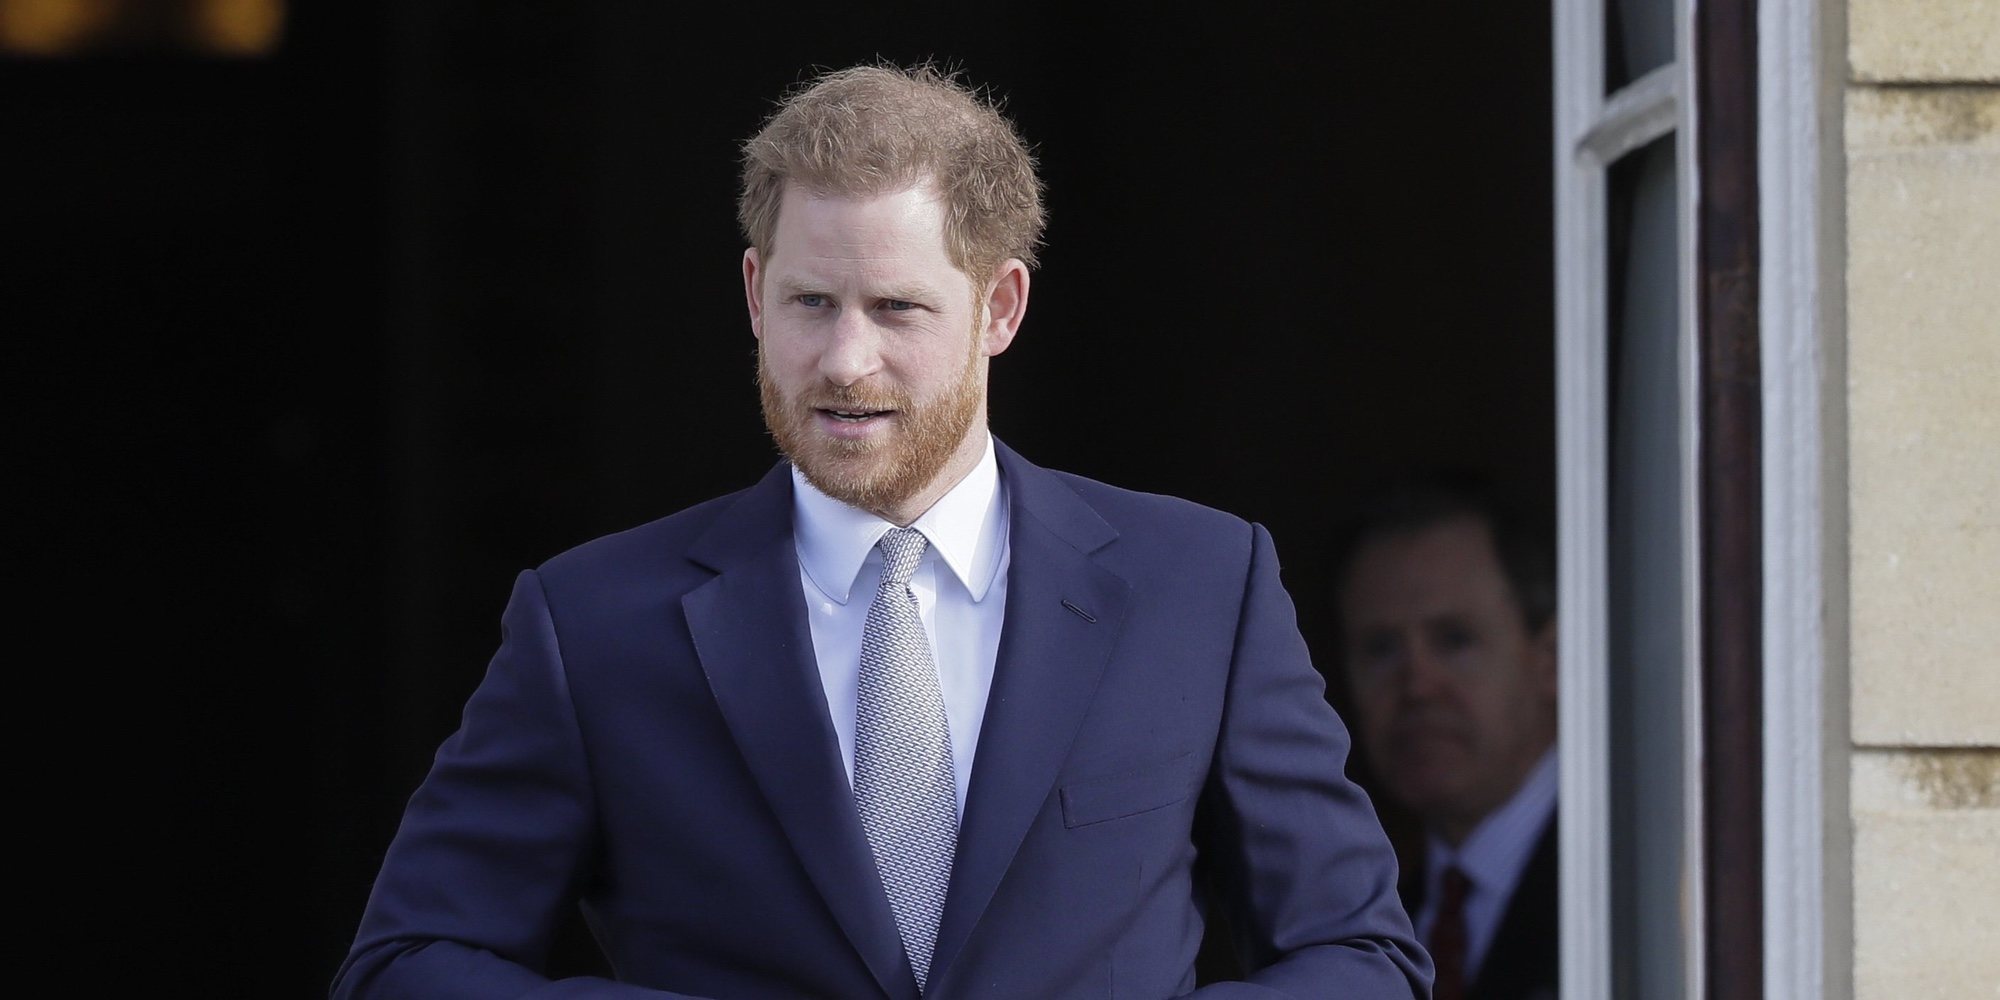 El Príncipe Harry lucha contra su calvicie visitando una prestigiosa clínica de tratamiento capilar